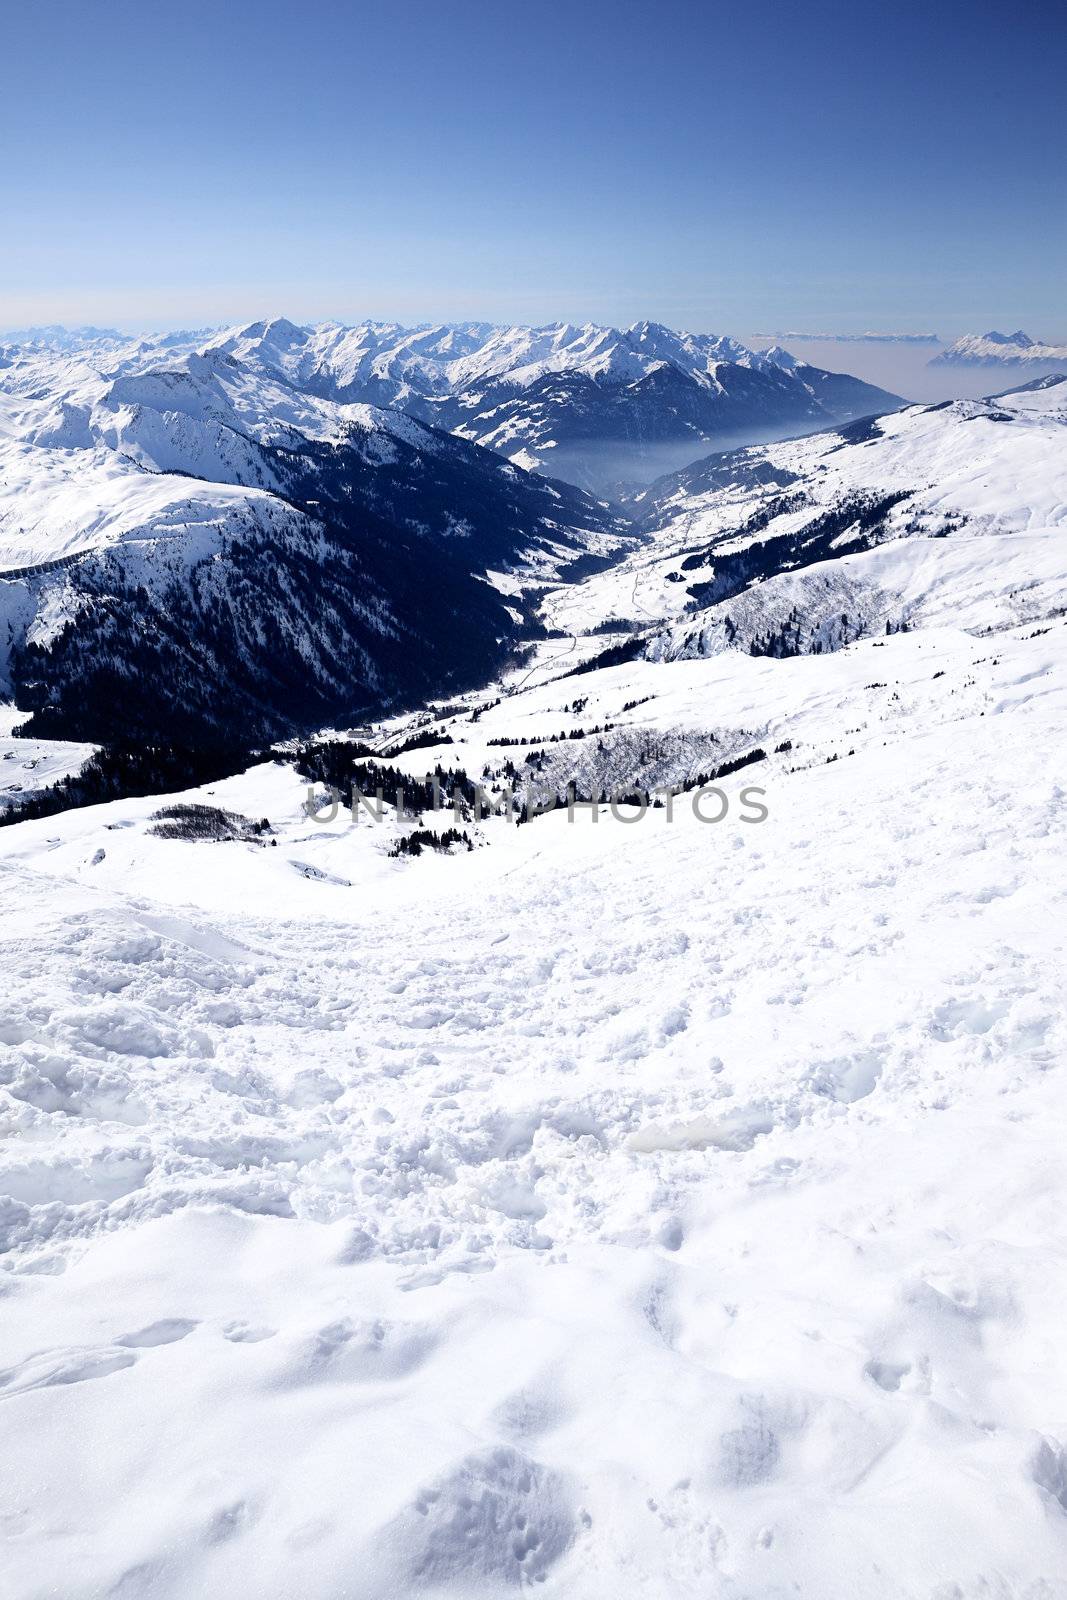 Ski resort in French Alps 